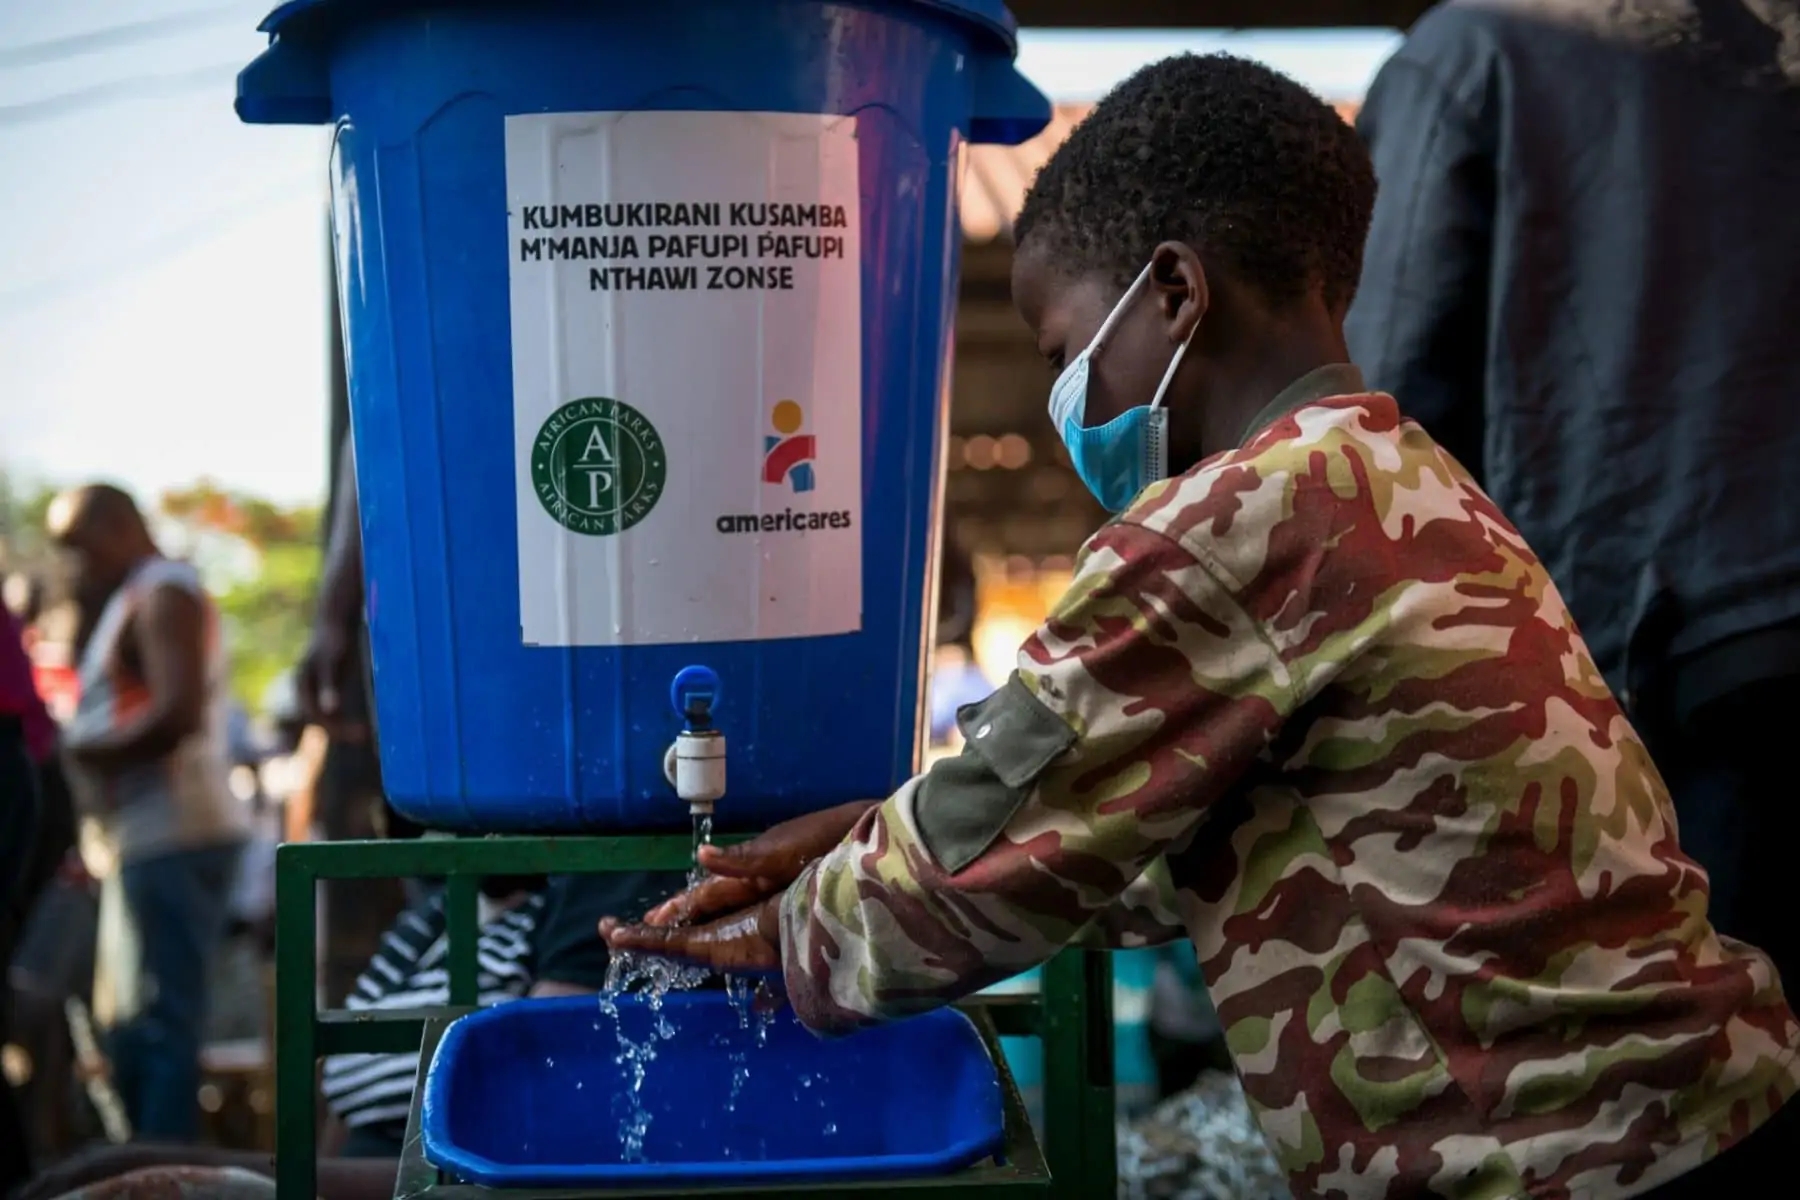 Child washing his hands. Photo by Thoko Chikondi